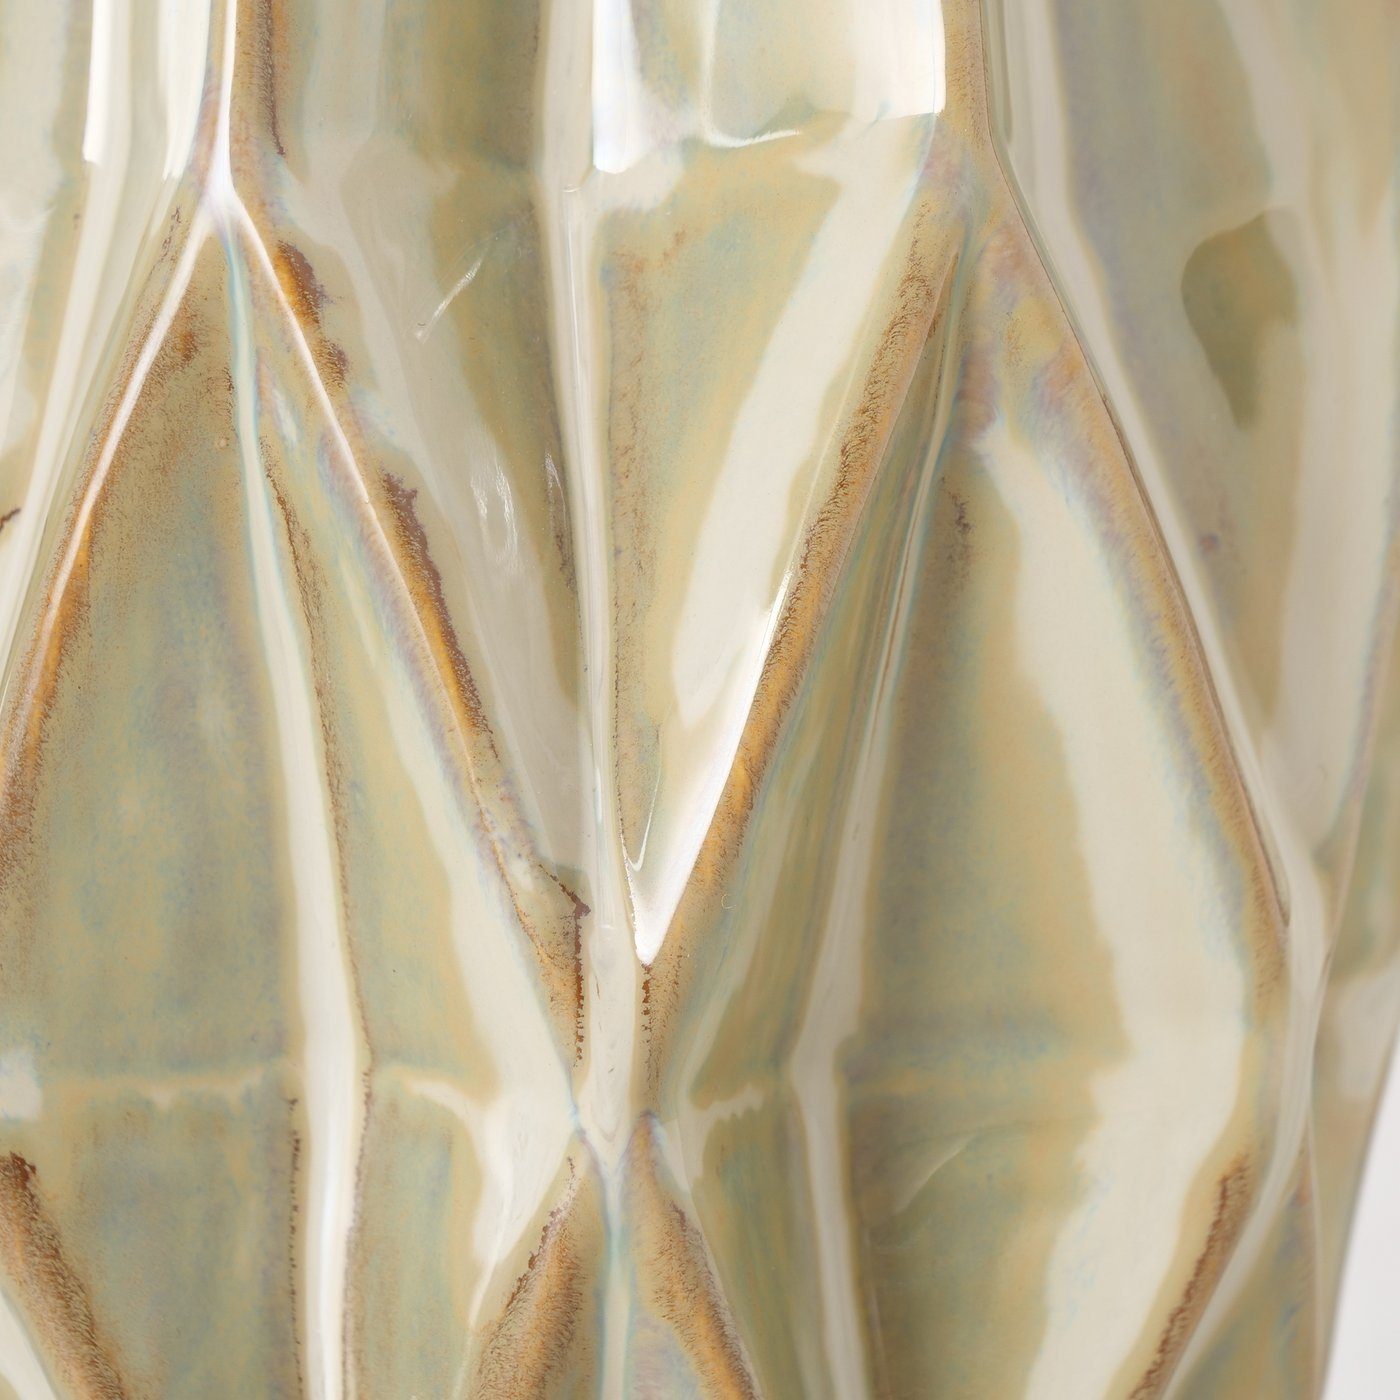 beige, aus Porzellan in Vase BOLTZE Blumenvase "Stroma" Dekovase